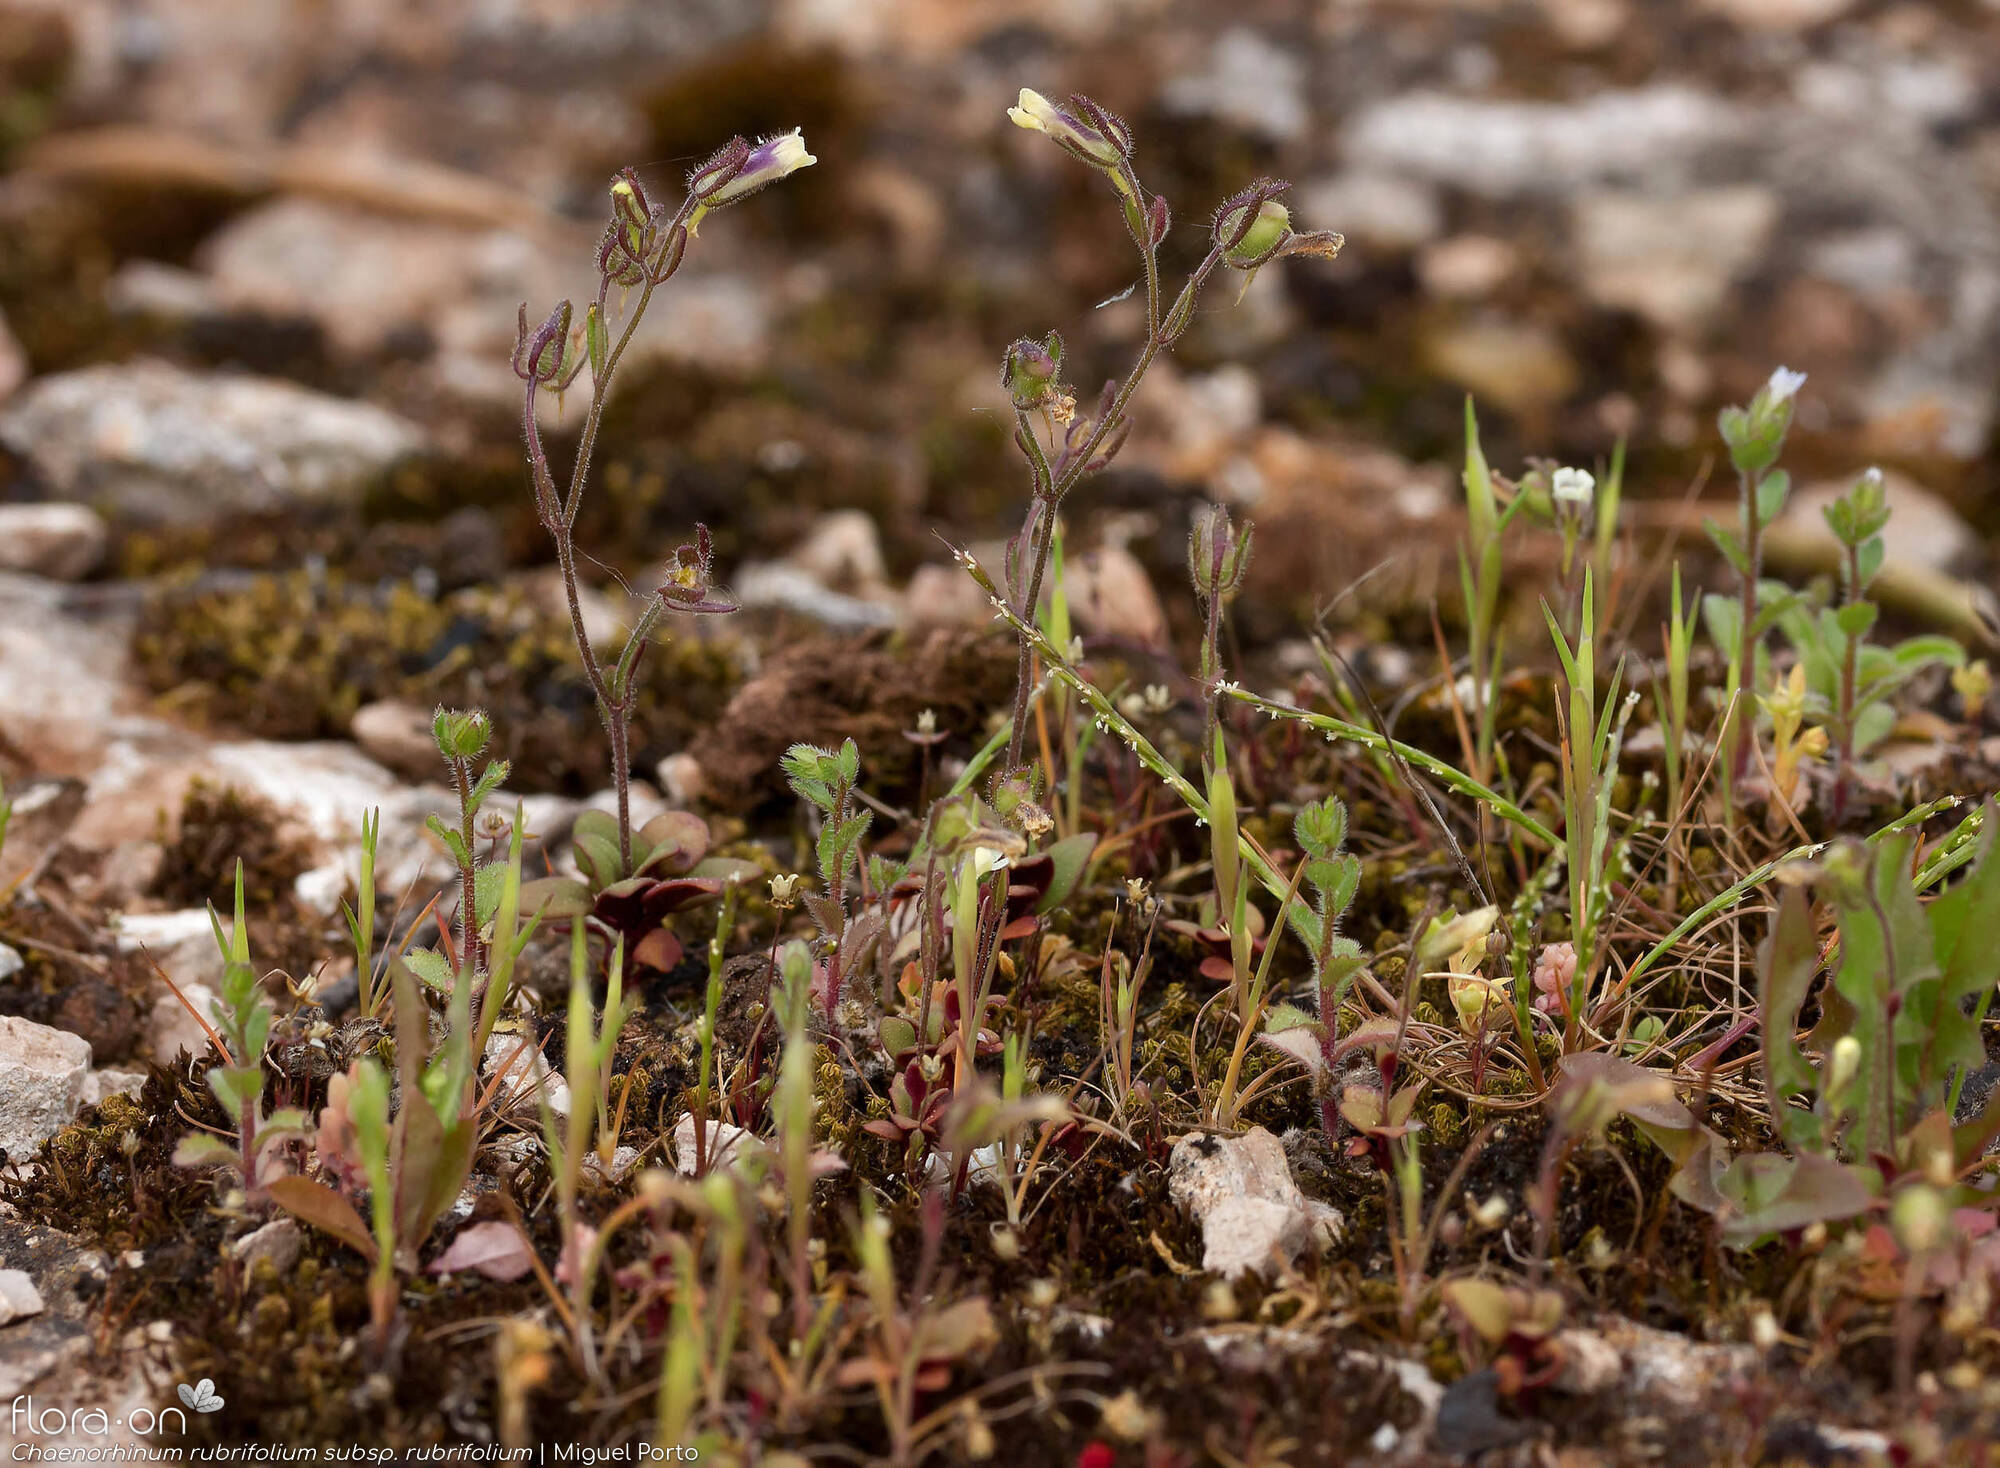 Chaenorhinum rubrifolium rubrifolium - Hábito | Miguel Porto; CC BY-NC 4.0